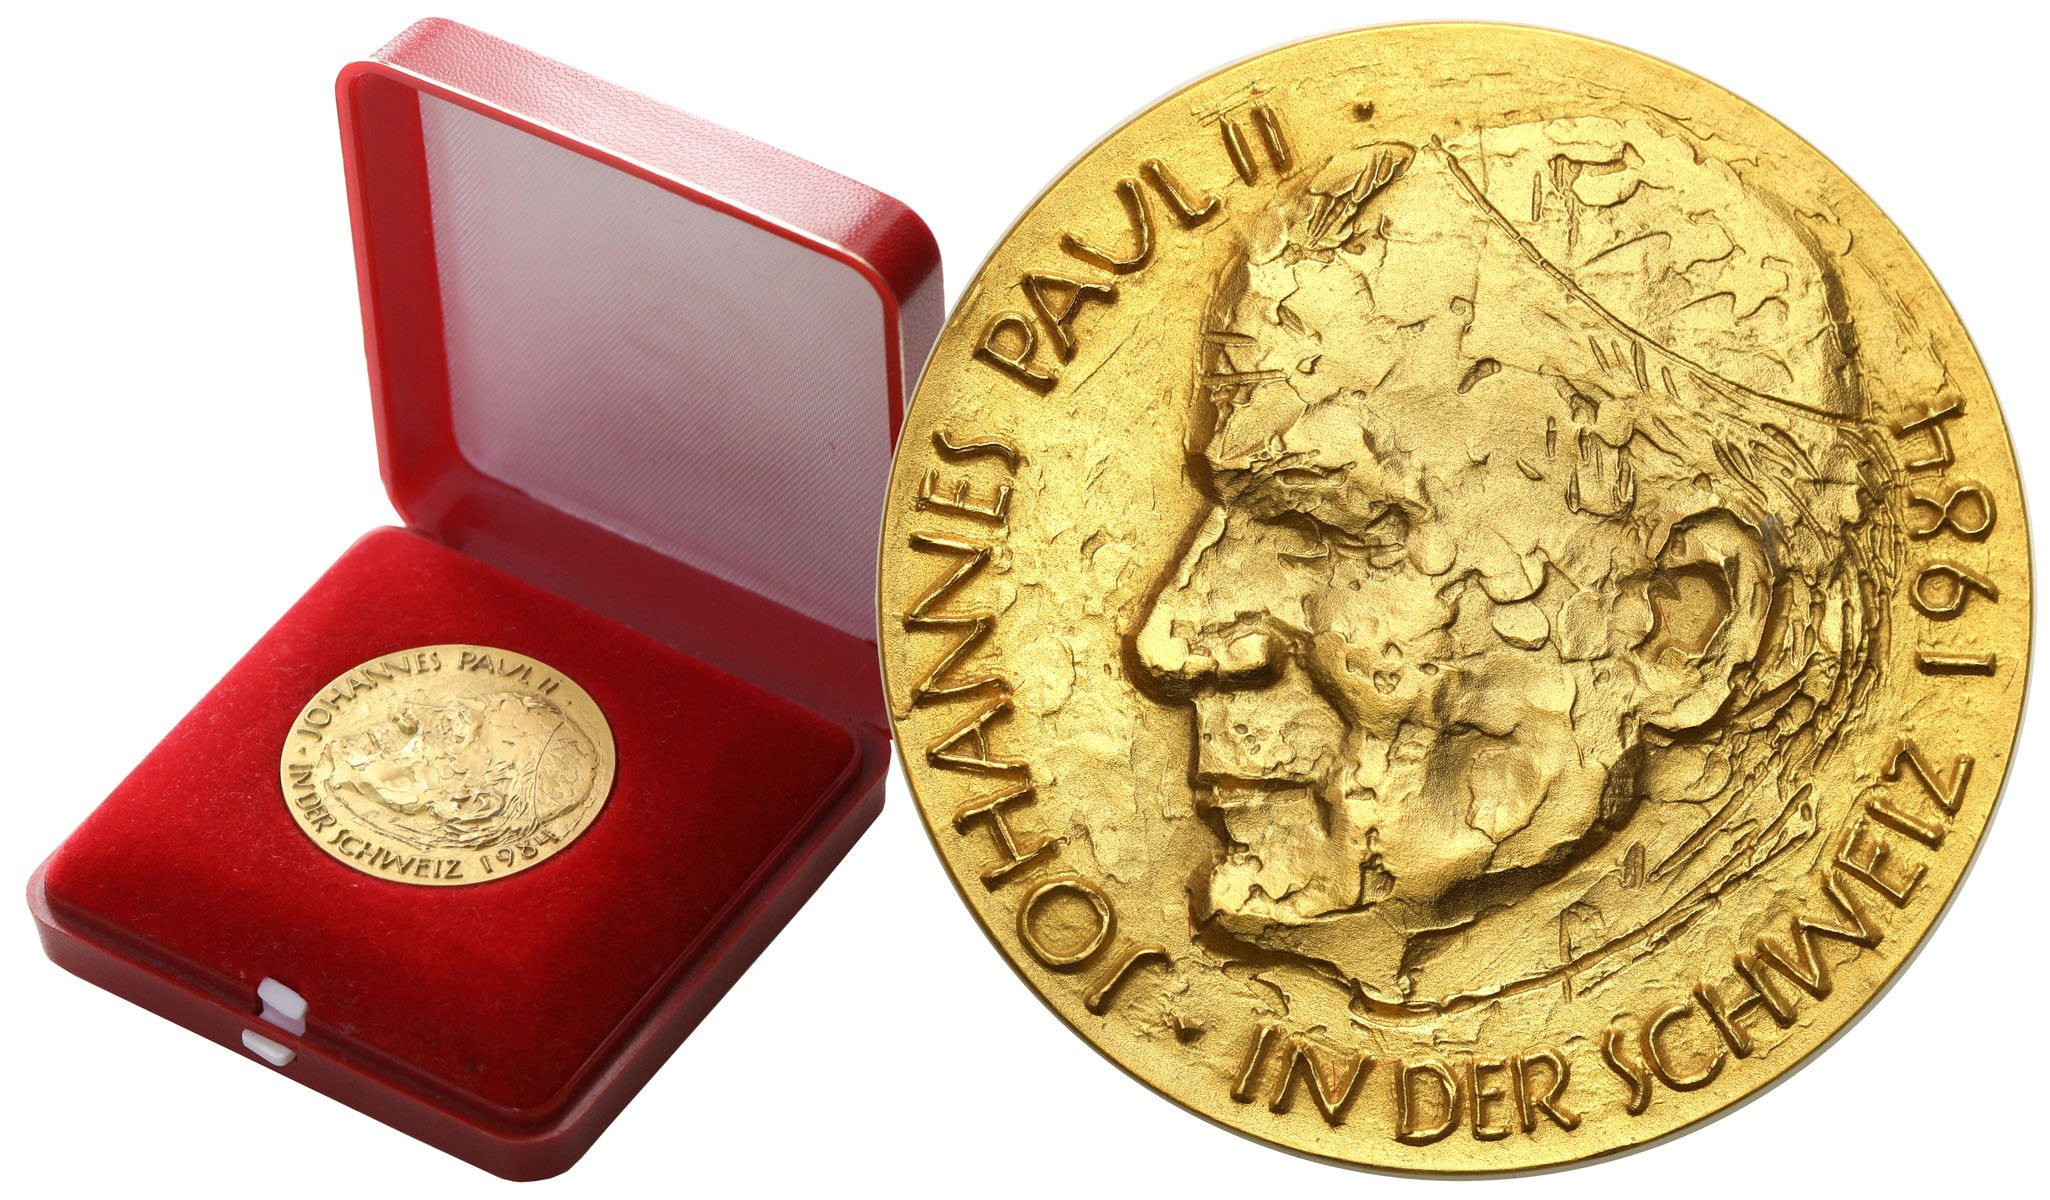 Szwajcaria, Luzern. Medal 1984 - Jan Paweł II Szwajcarii – ZŁOTO